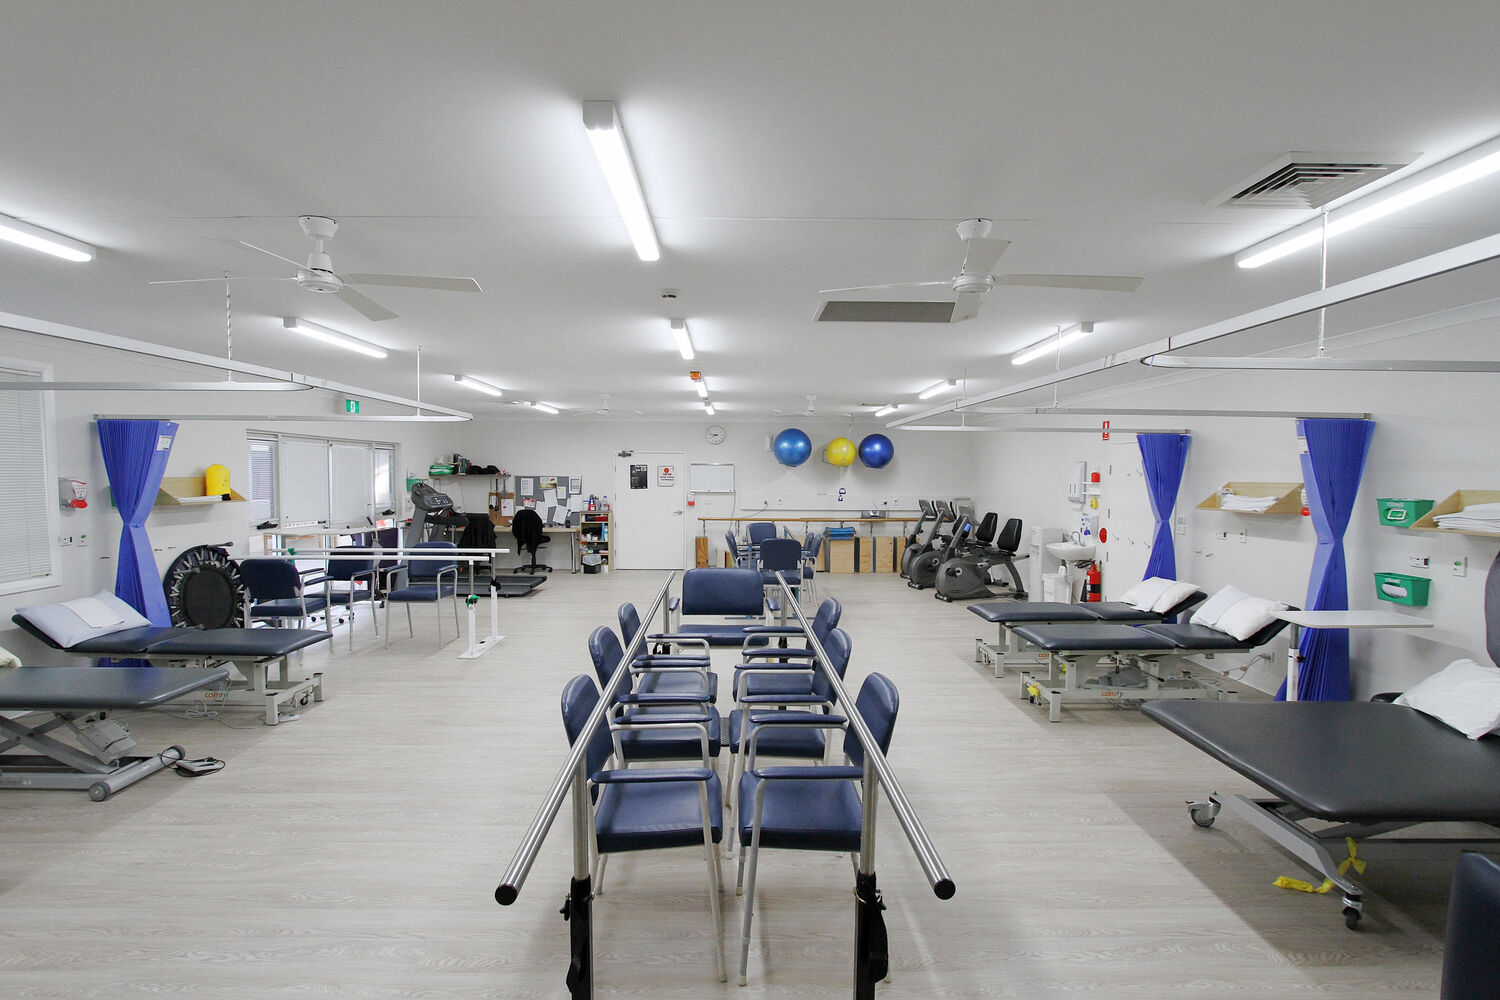 Gym Facilities at Westmead Rehabilitation Hospital